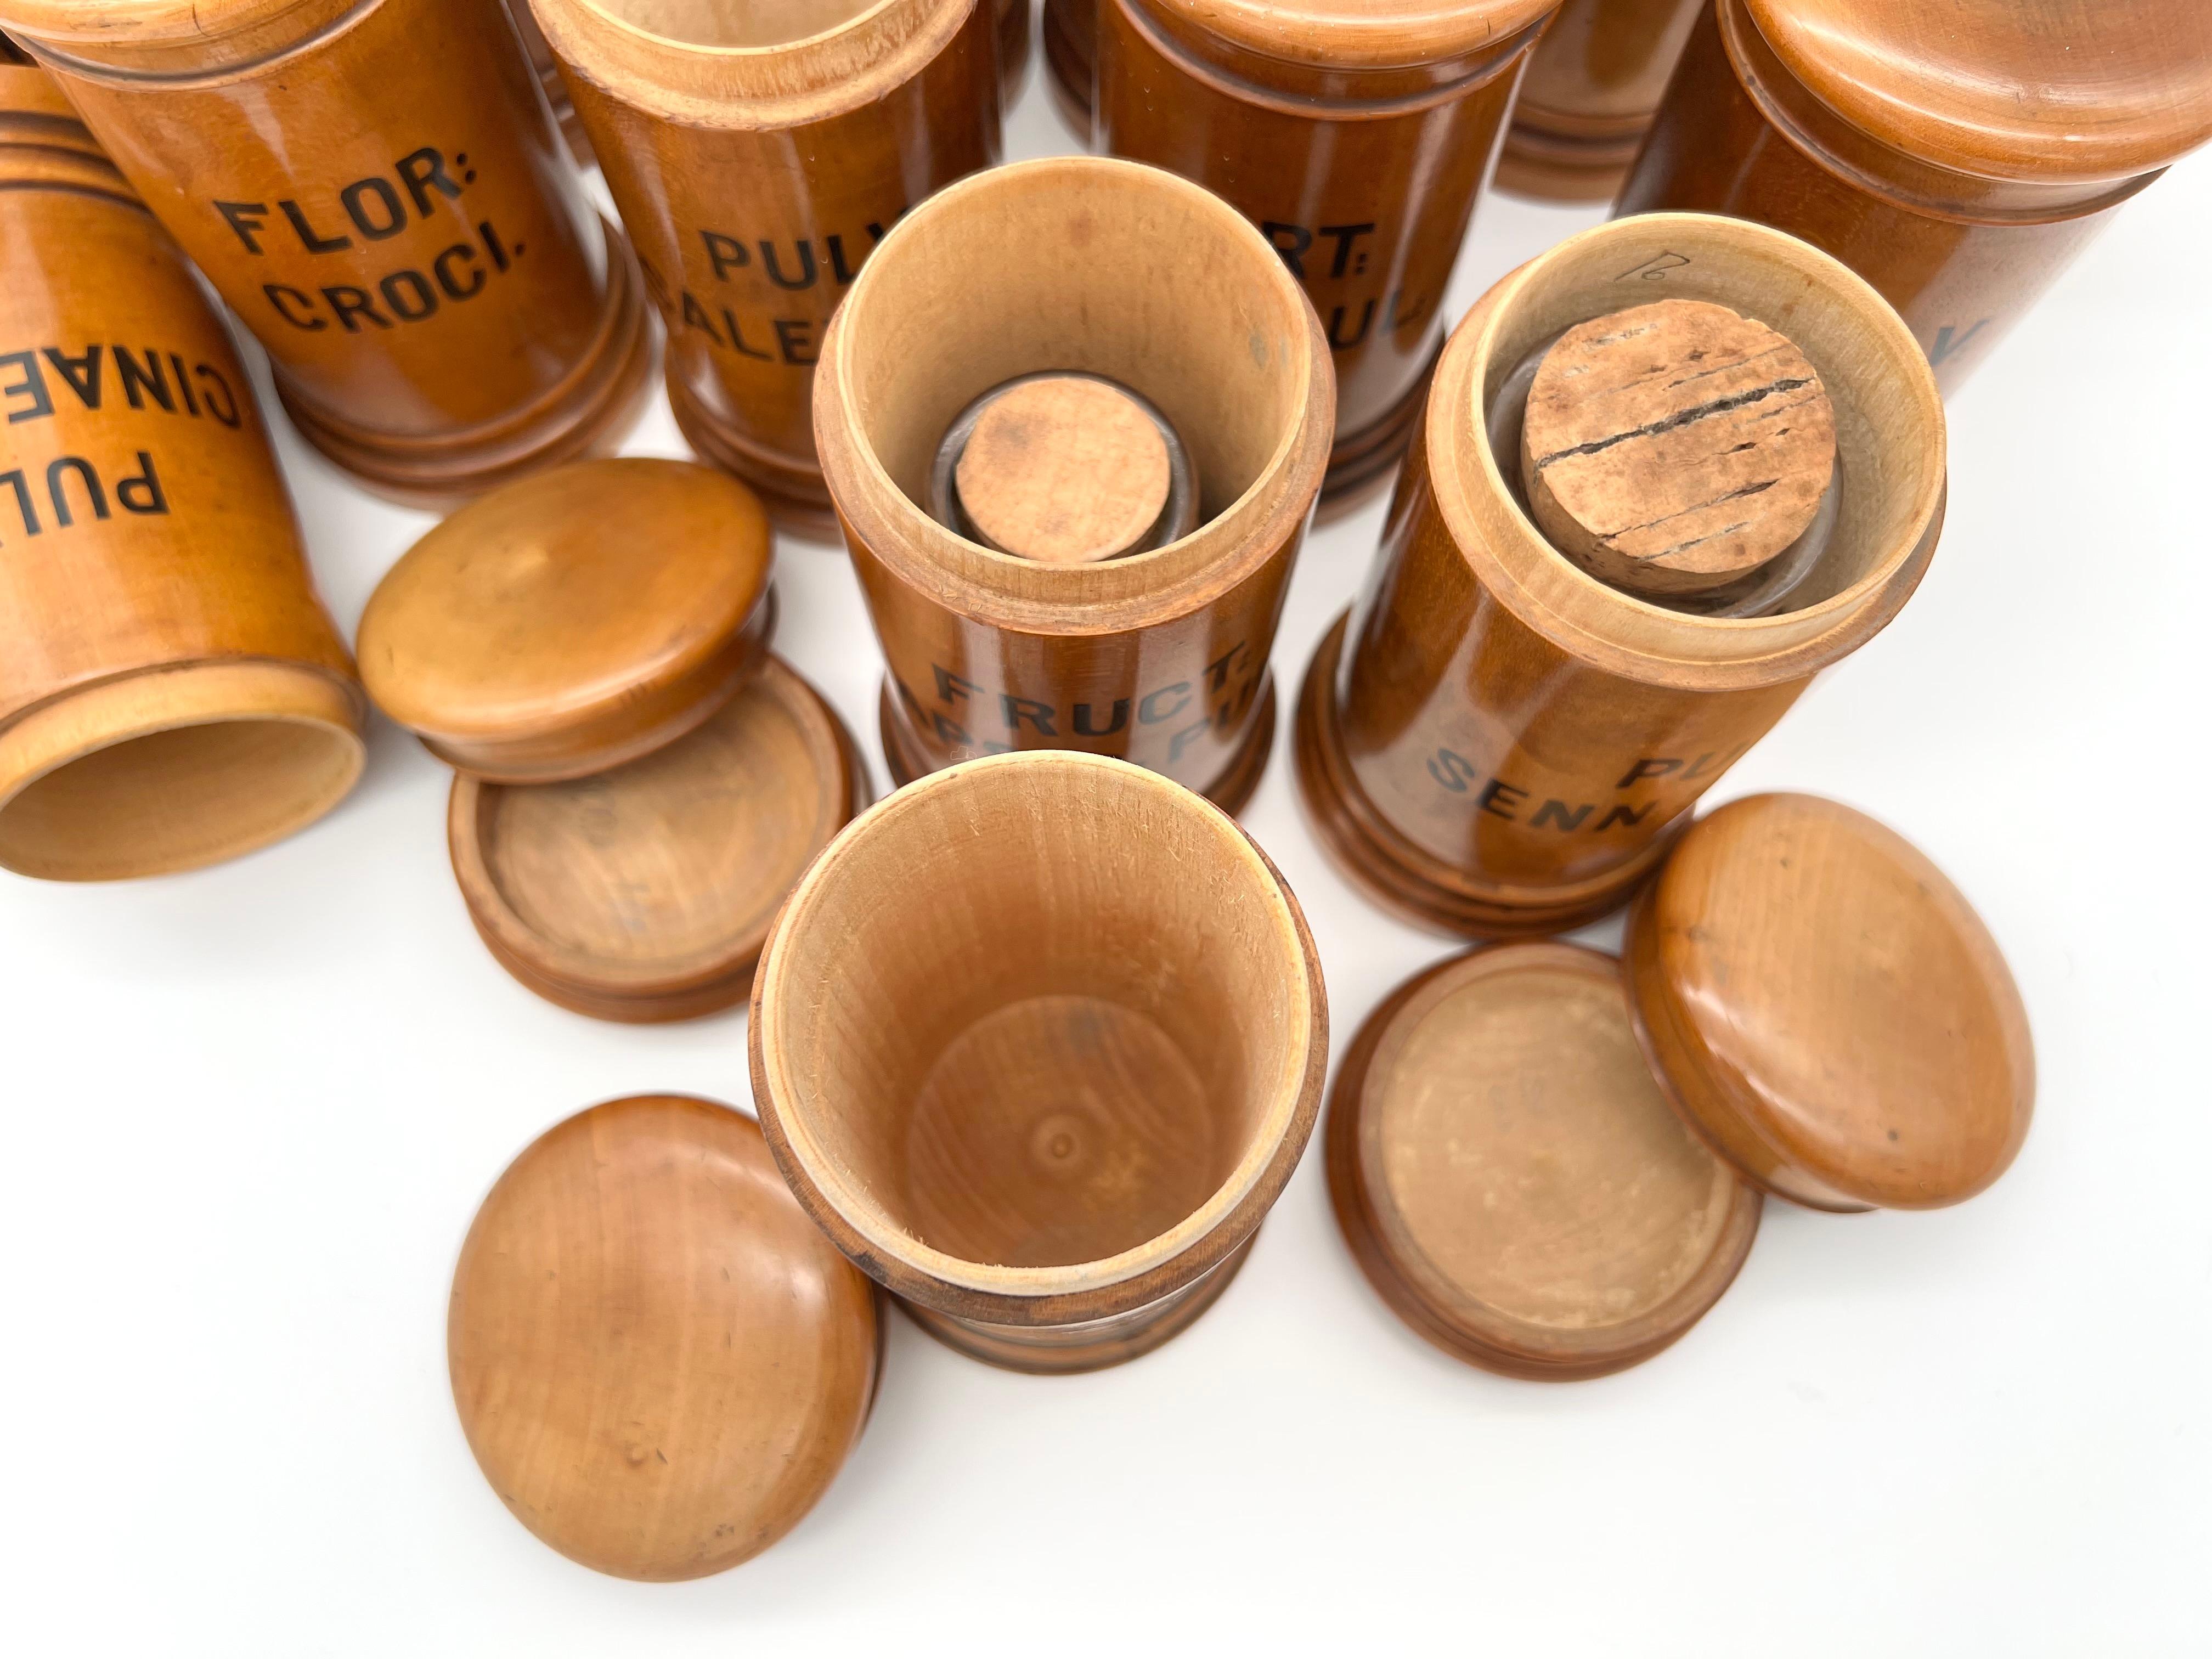 Hölzerne Wiener Apothekengefäße aus dem späten 19. Jahrhundert, in einem Satz von 22 Stück. 

Die Behälter mit Deckel sind aus Buchsbaumholz gefertigt und mit den lateinischen Namen der verschiedenen Gewürze bedruckt.

Sie sind im Allgemeinen in